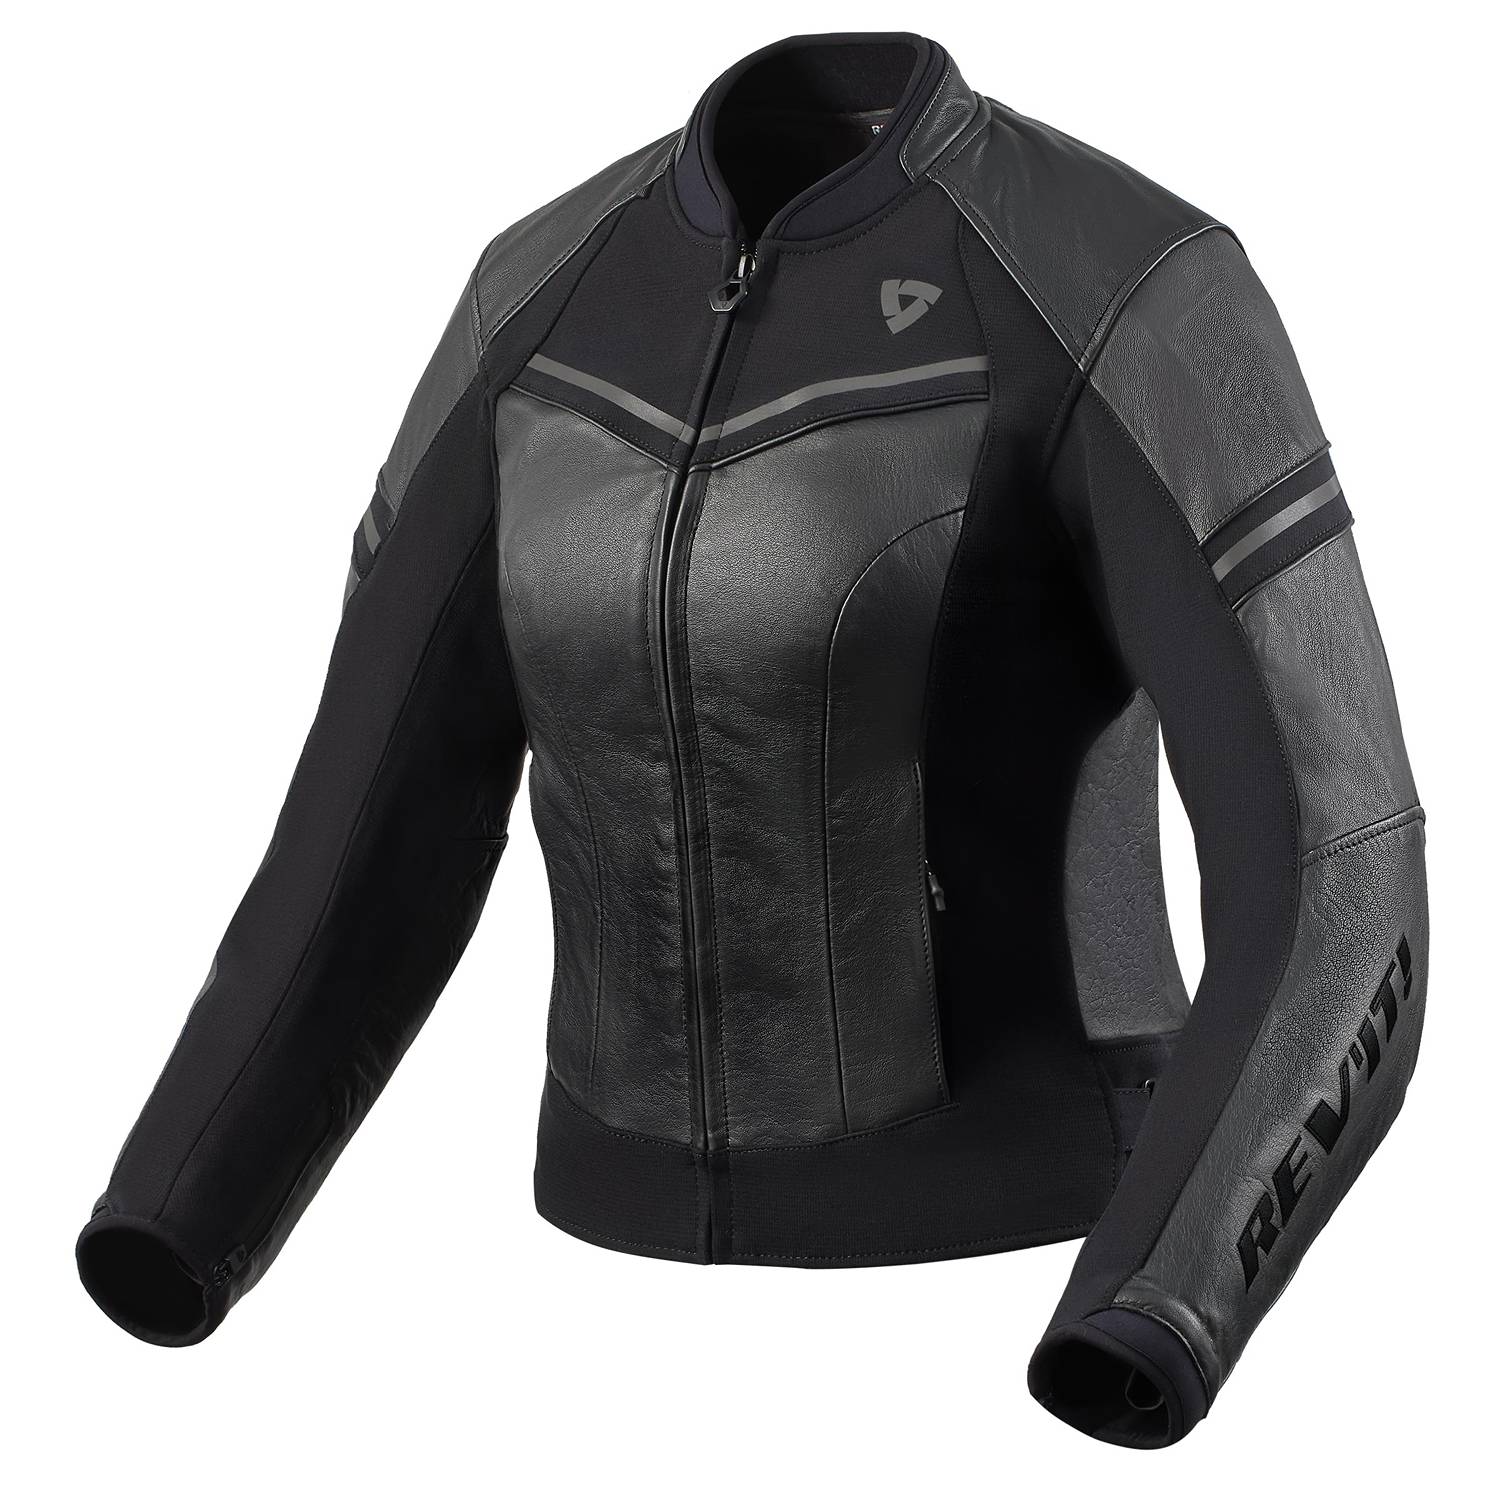 Image of REV'IT! Median Ladies Jacket Black Anthracite Size 36 EN